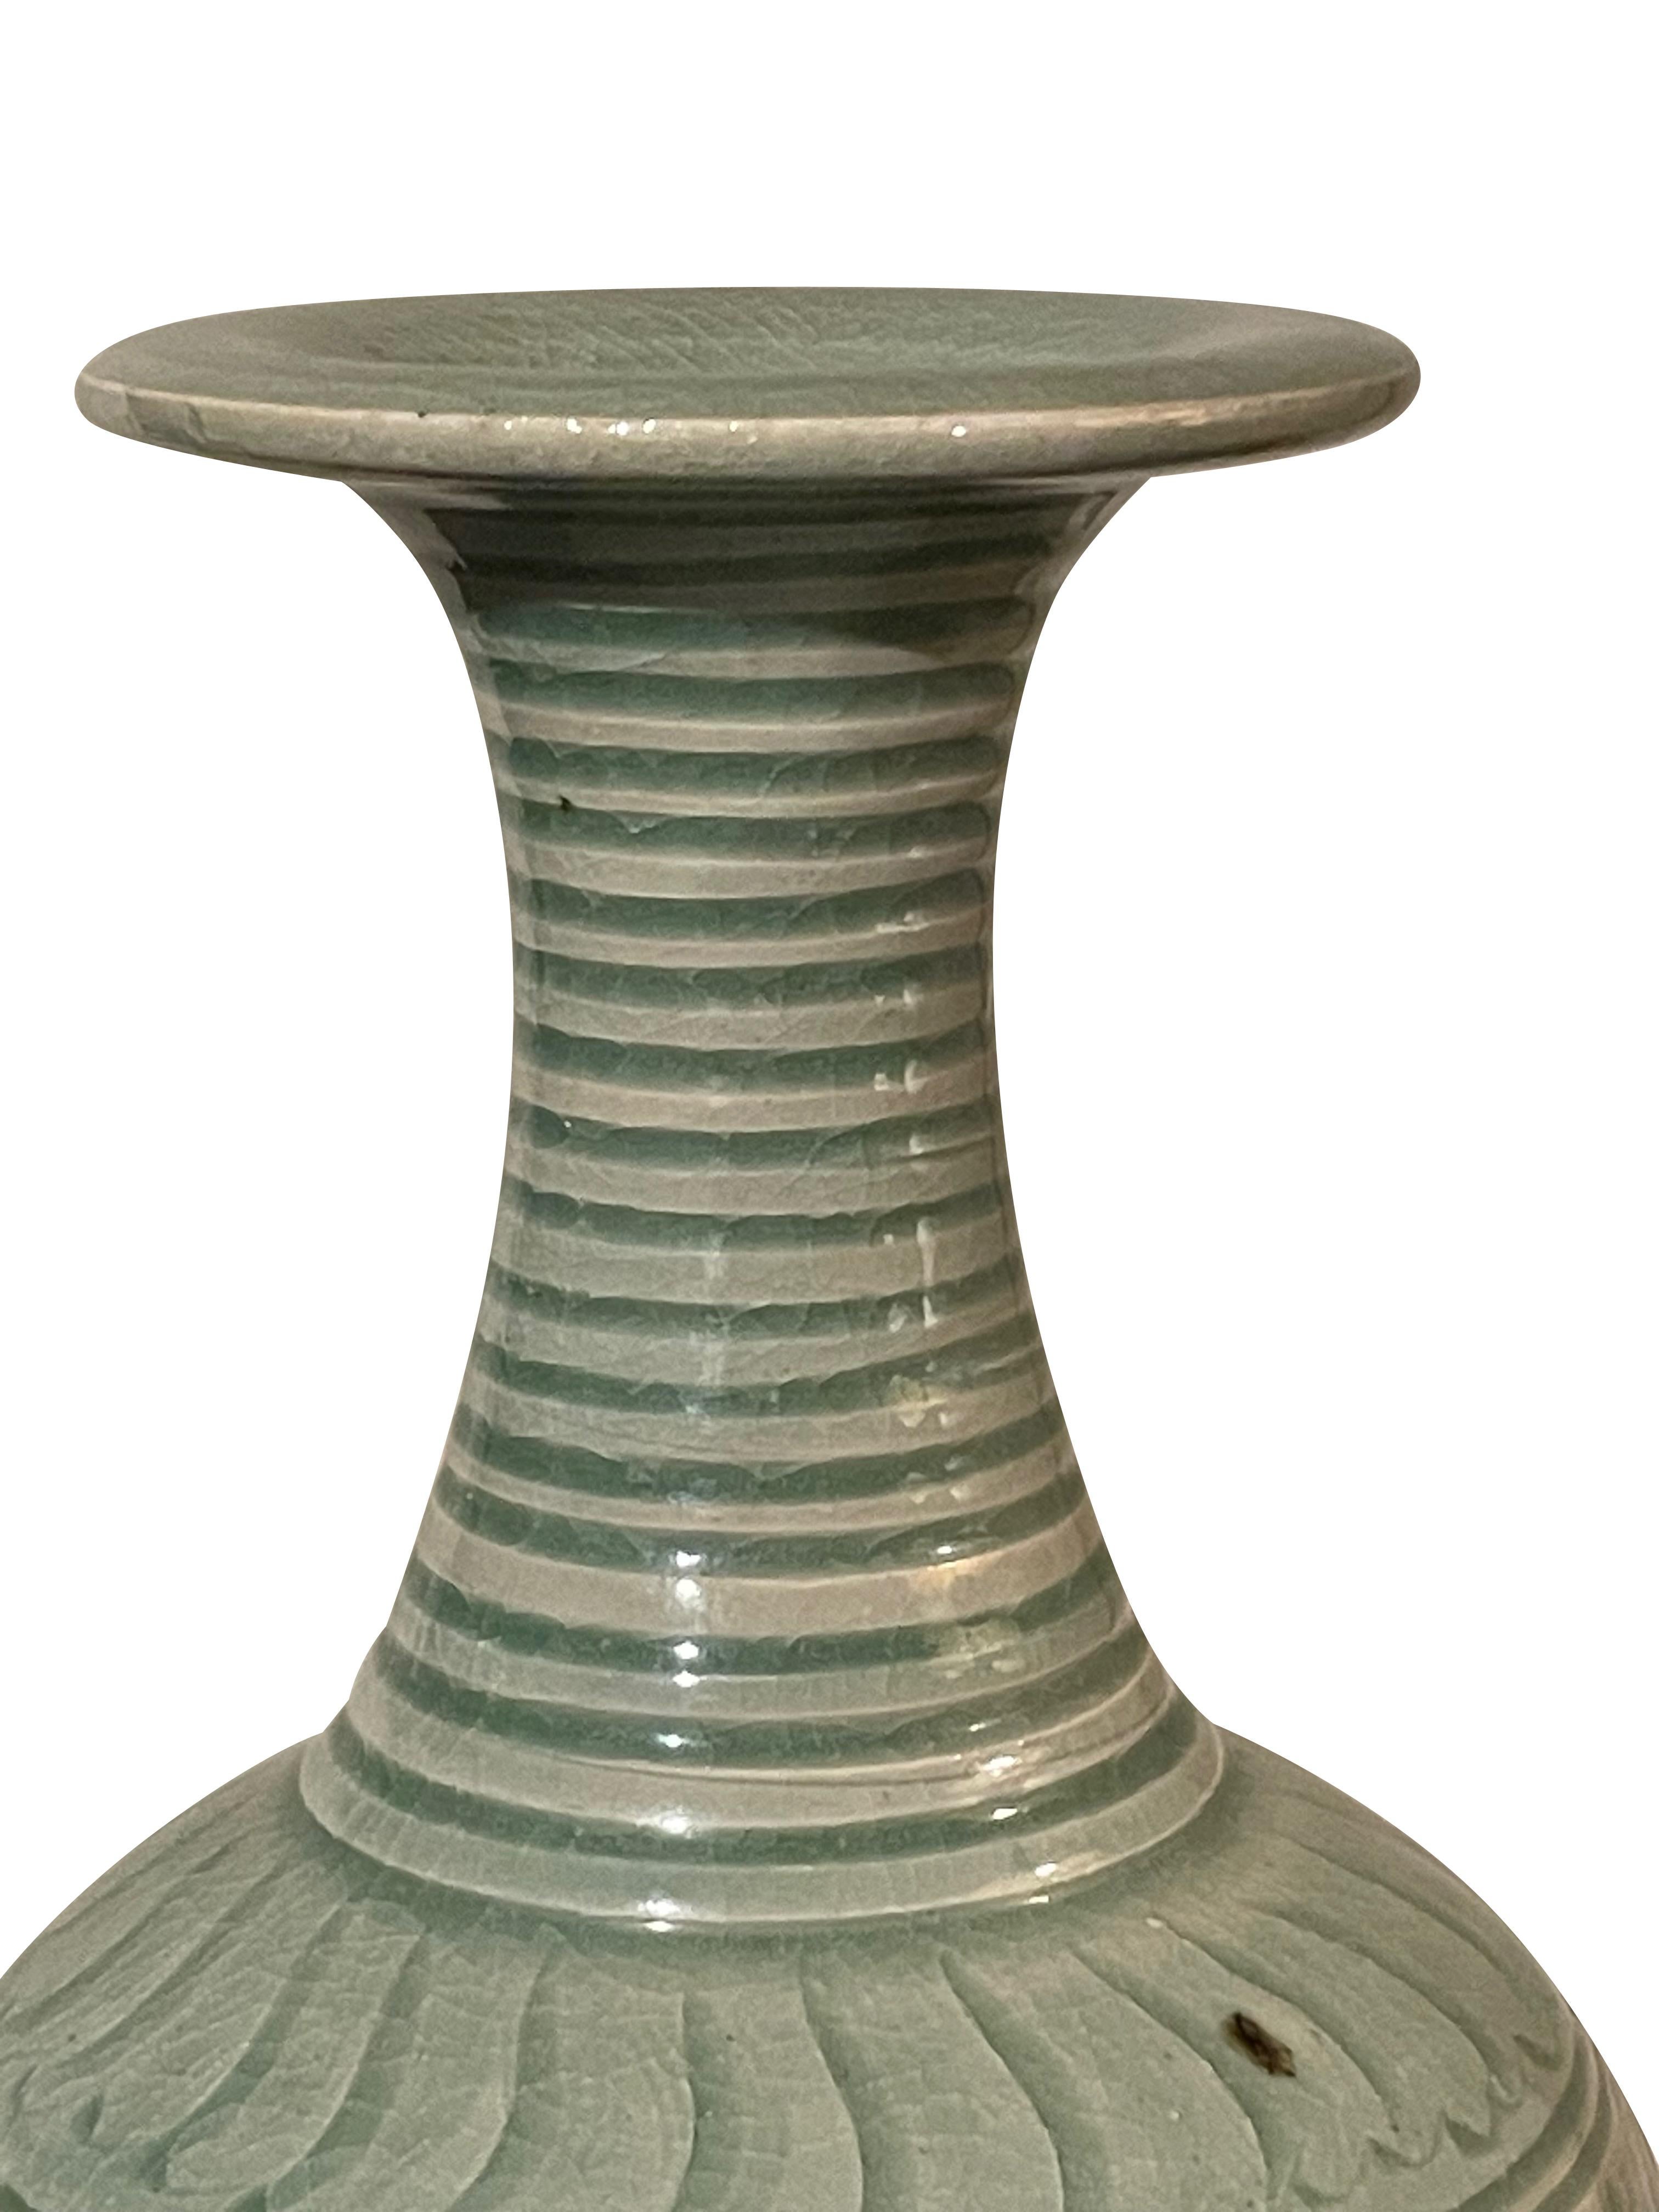 Vase contemporain chinois à glaçure céladon avec motif décoratif à la base.
Côtes horizontales en relief au niveau de l'encolure.
